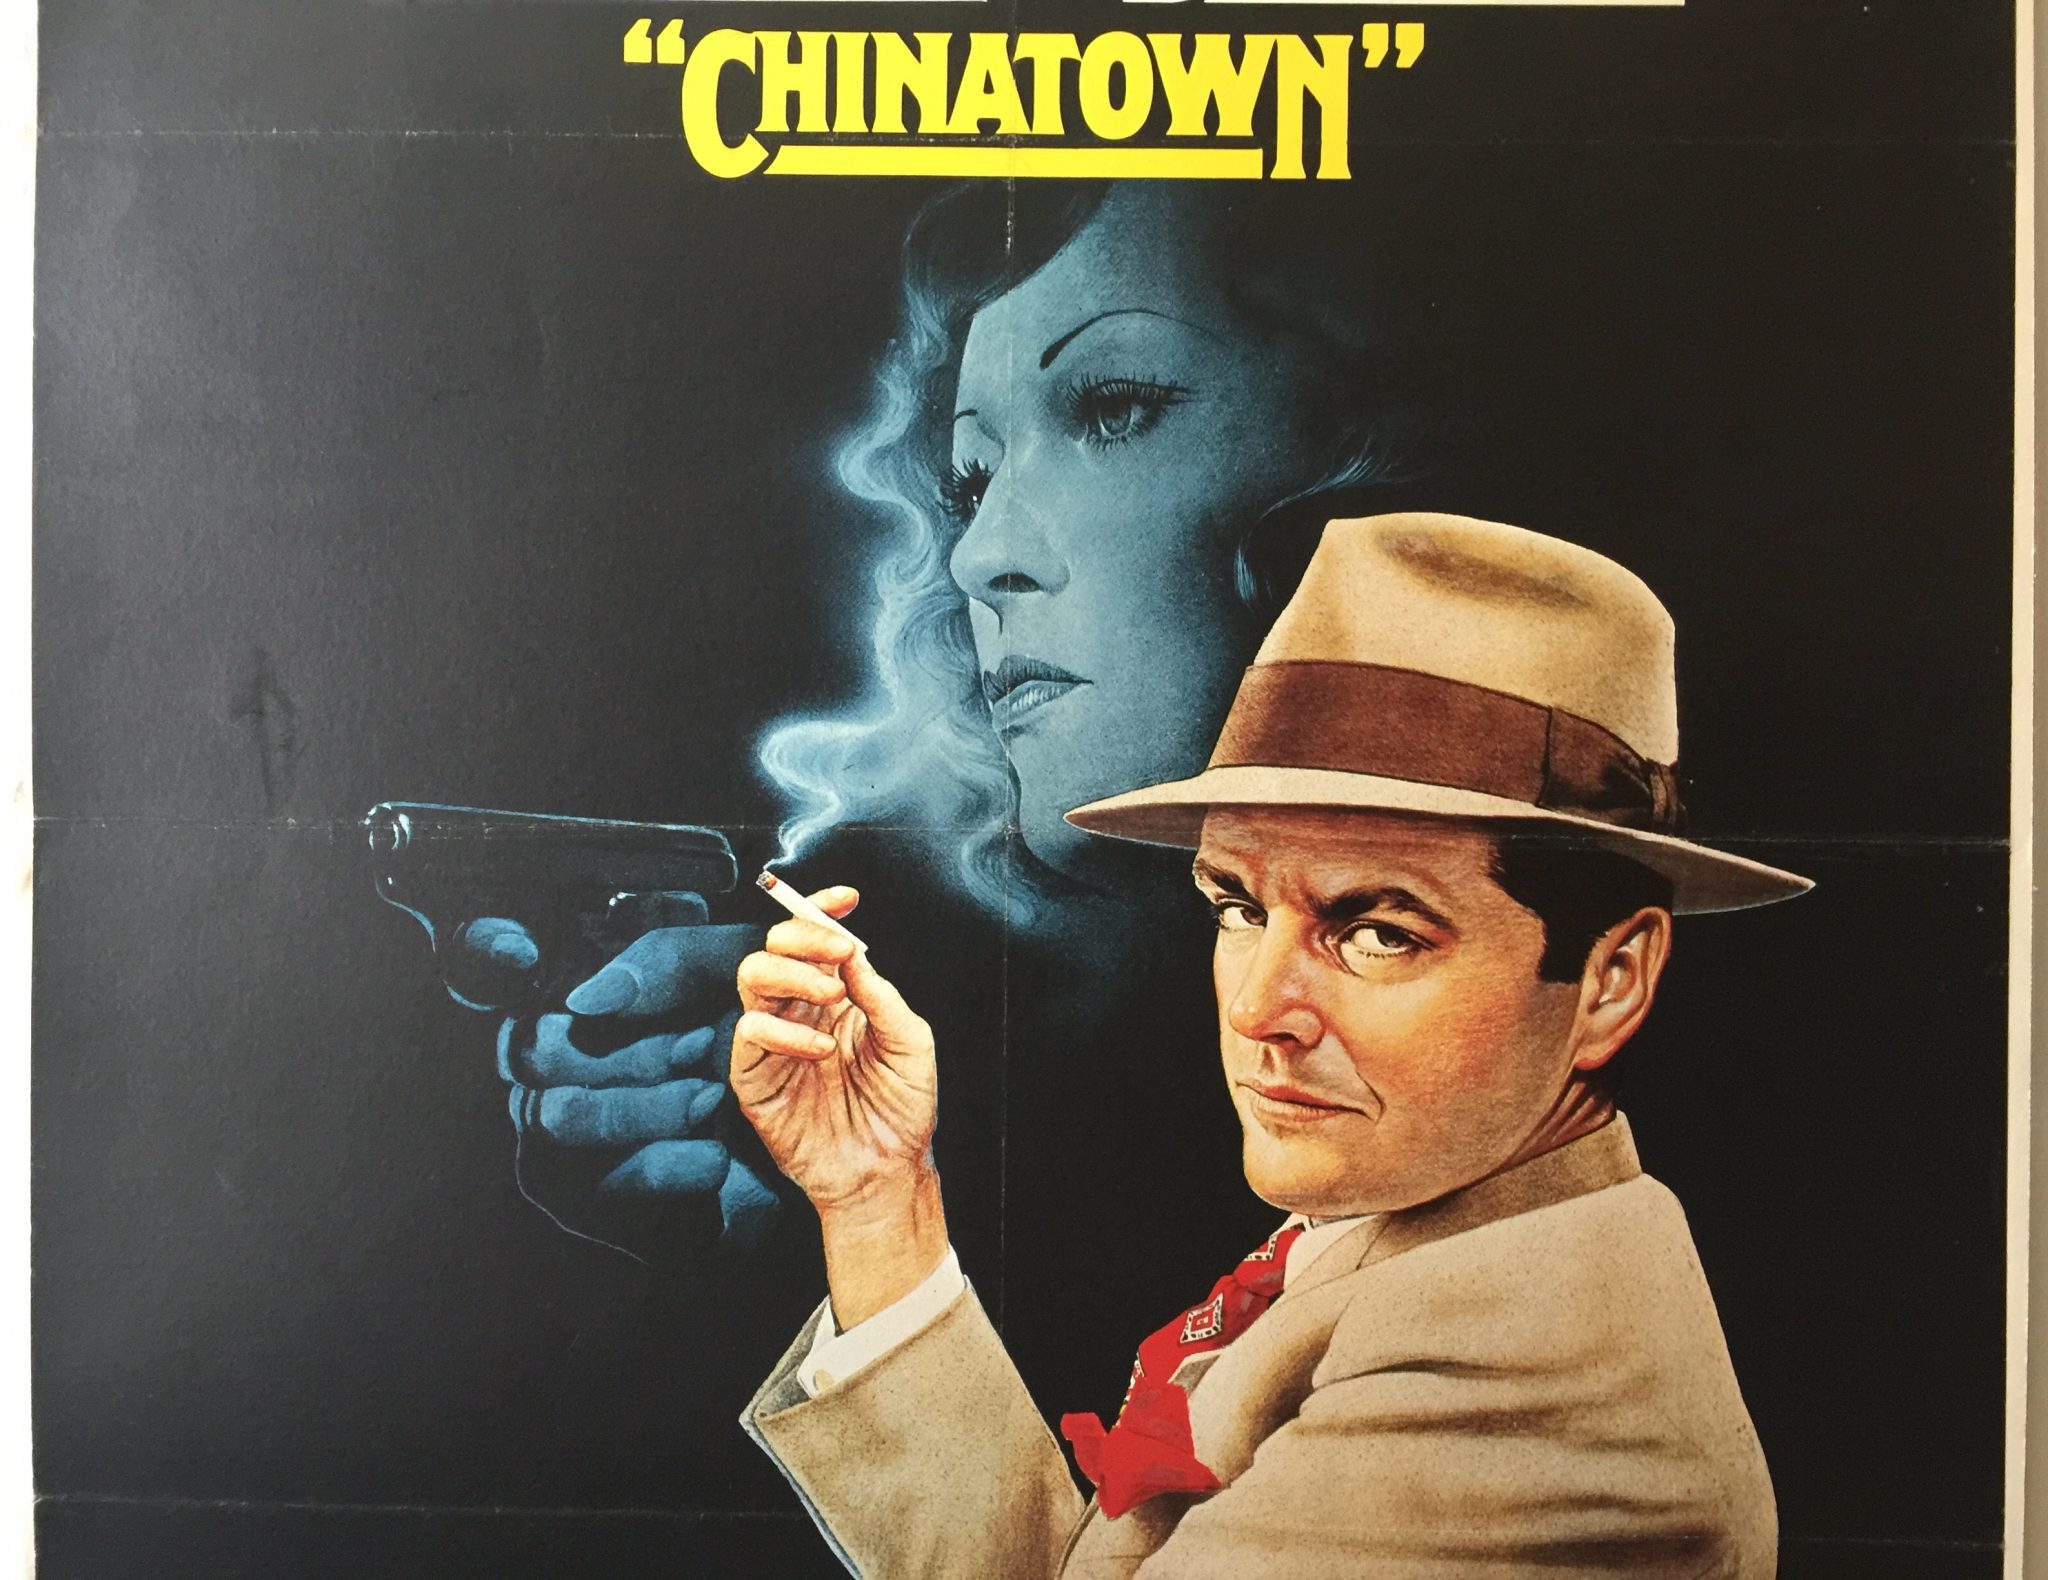 1974 Chinatown